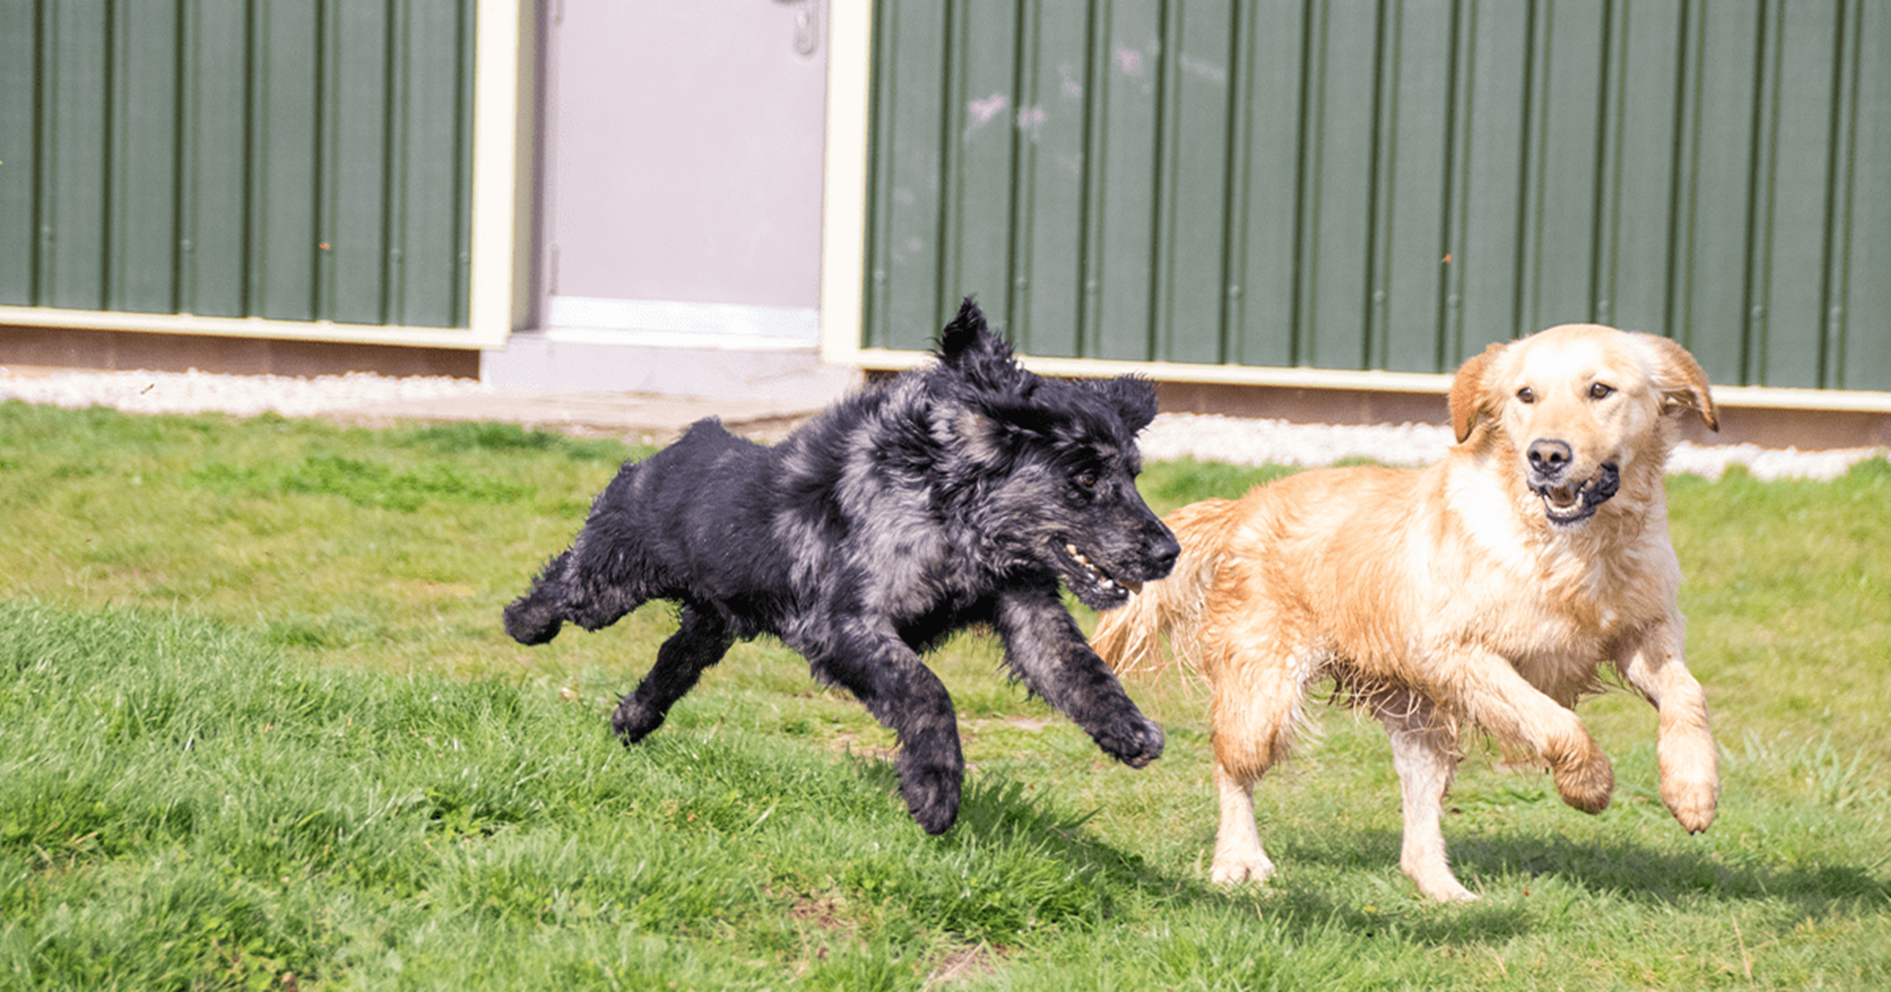 Dois cães correndo em um campo gramado.